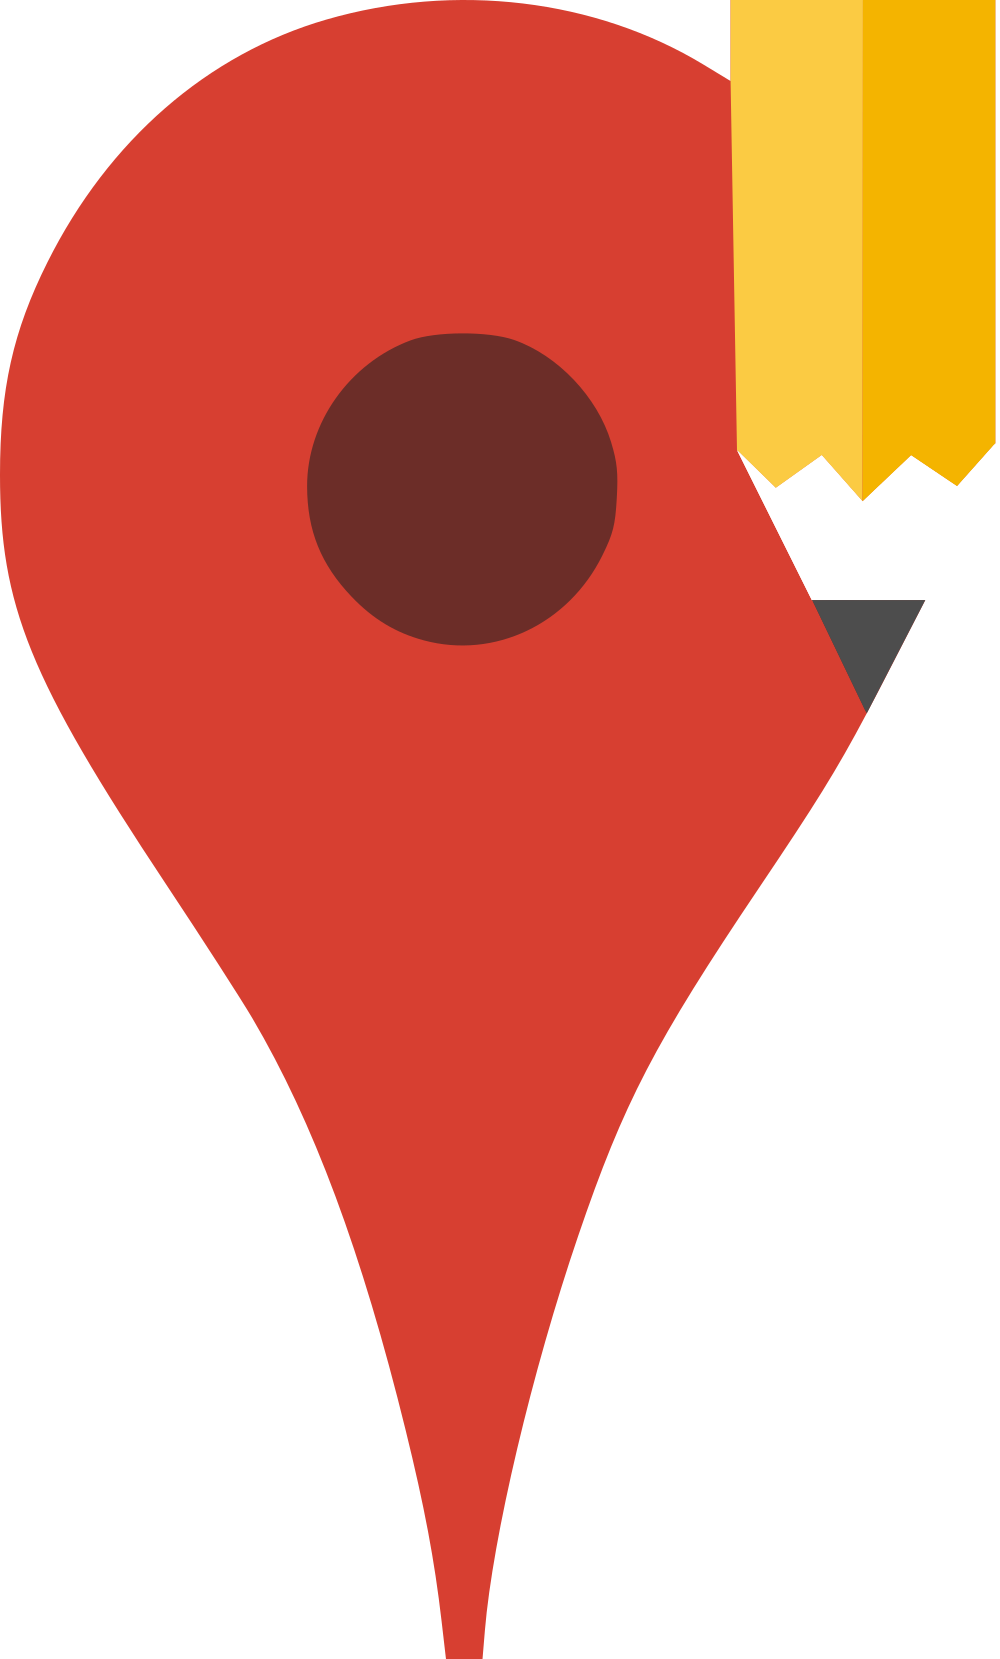 Open - Google Map Maker Logo (1000x1659)